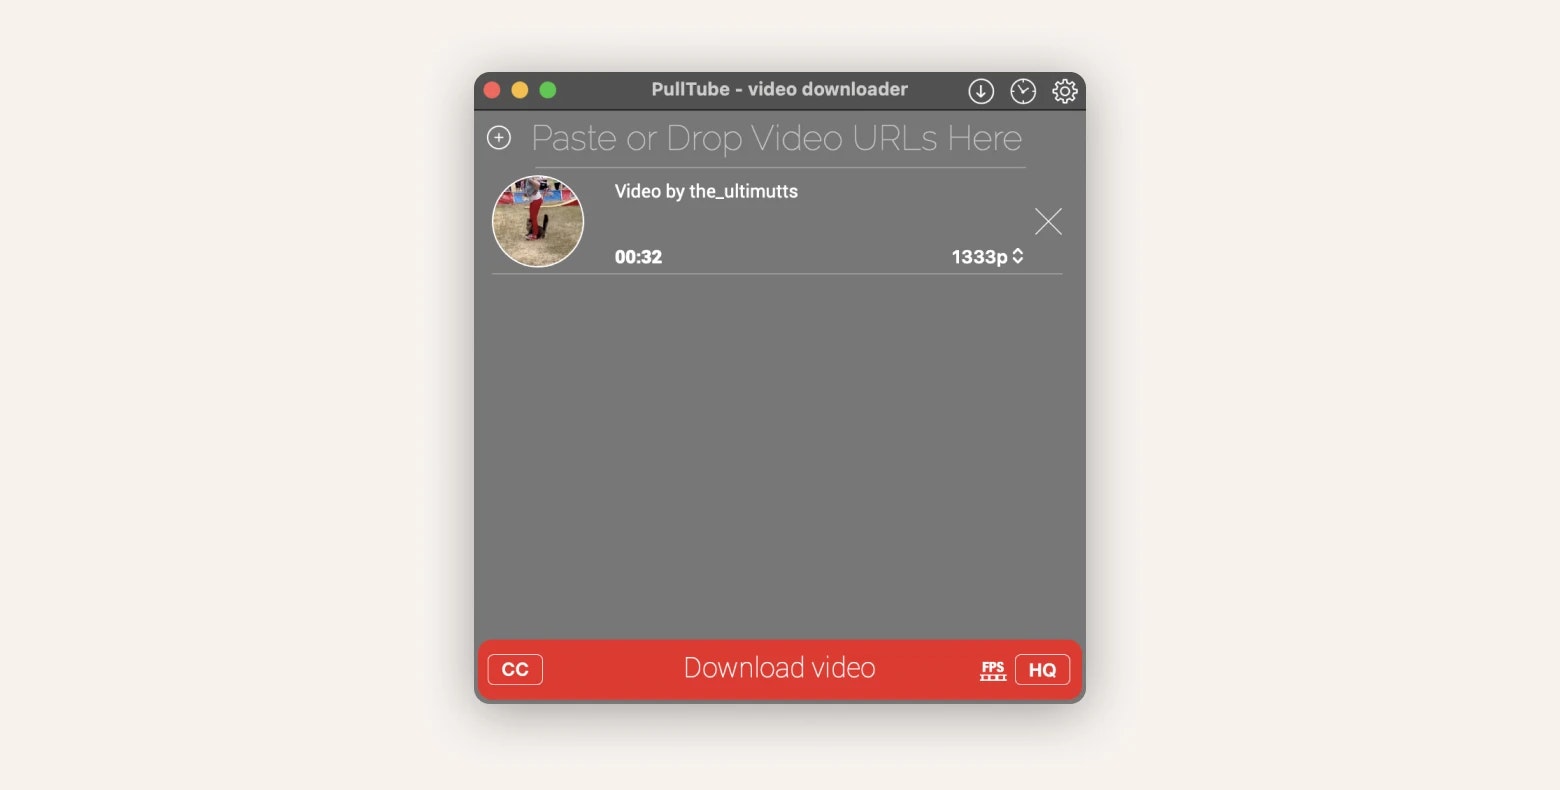 PullTube video downloader